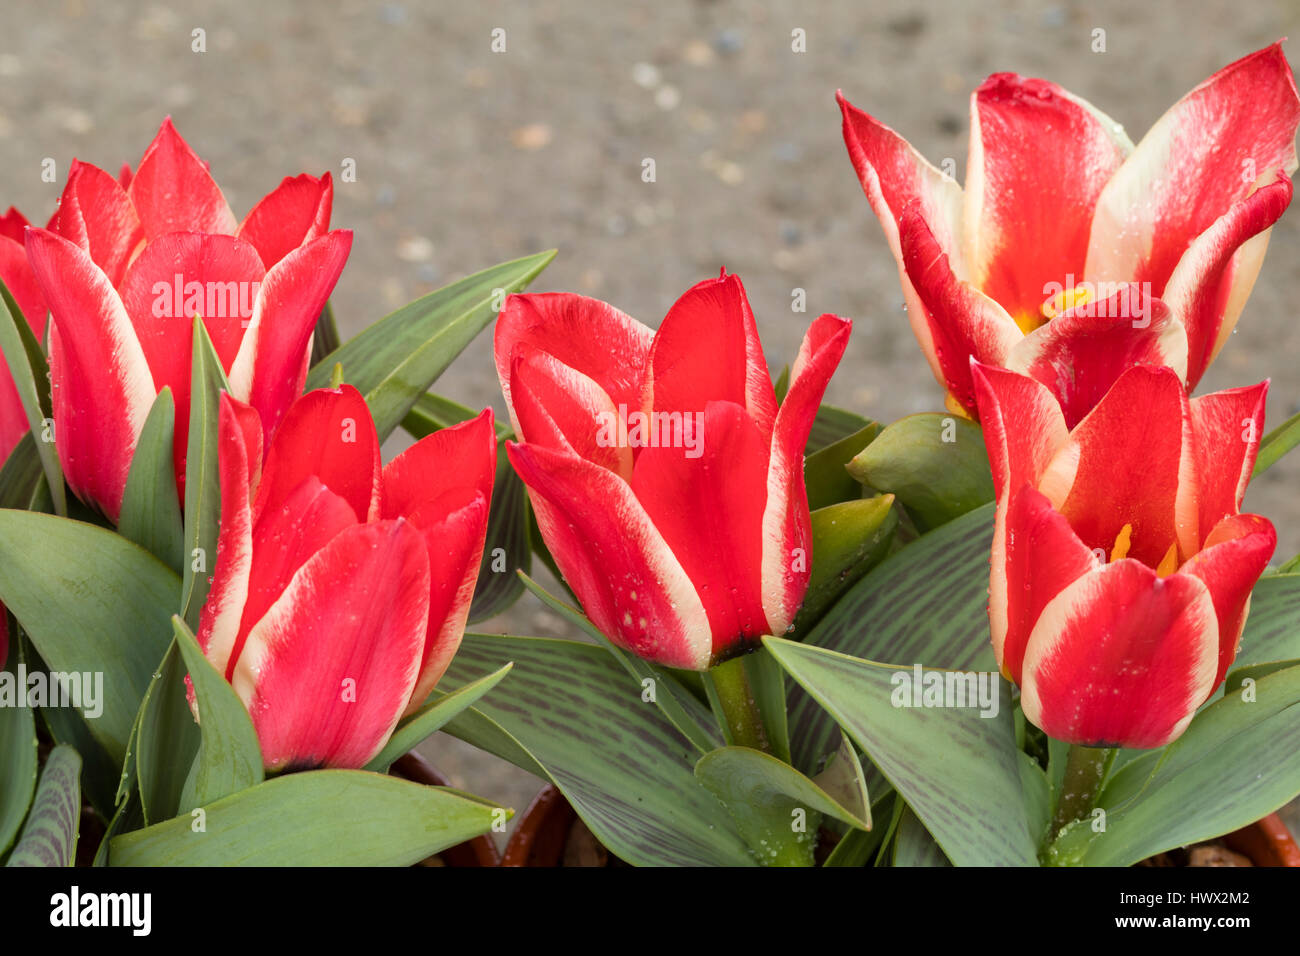 Rossa e bianca a strisce dei fiori di fioritura precoce specie tulip, Tulipa greigii "Pinocchio" Foto Stock